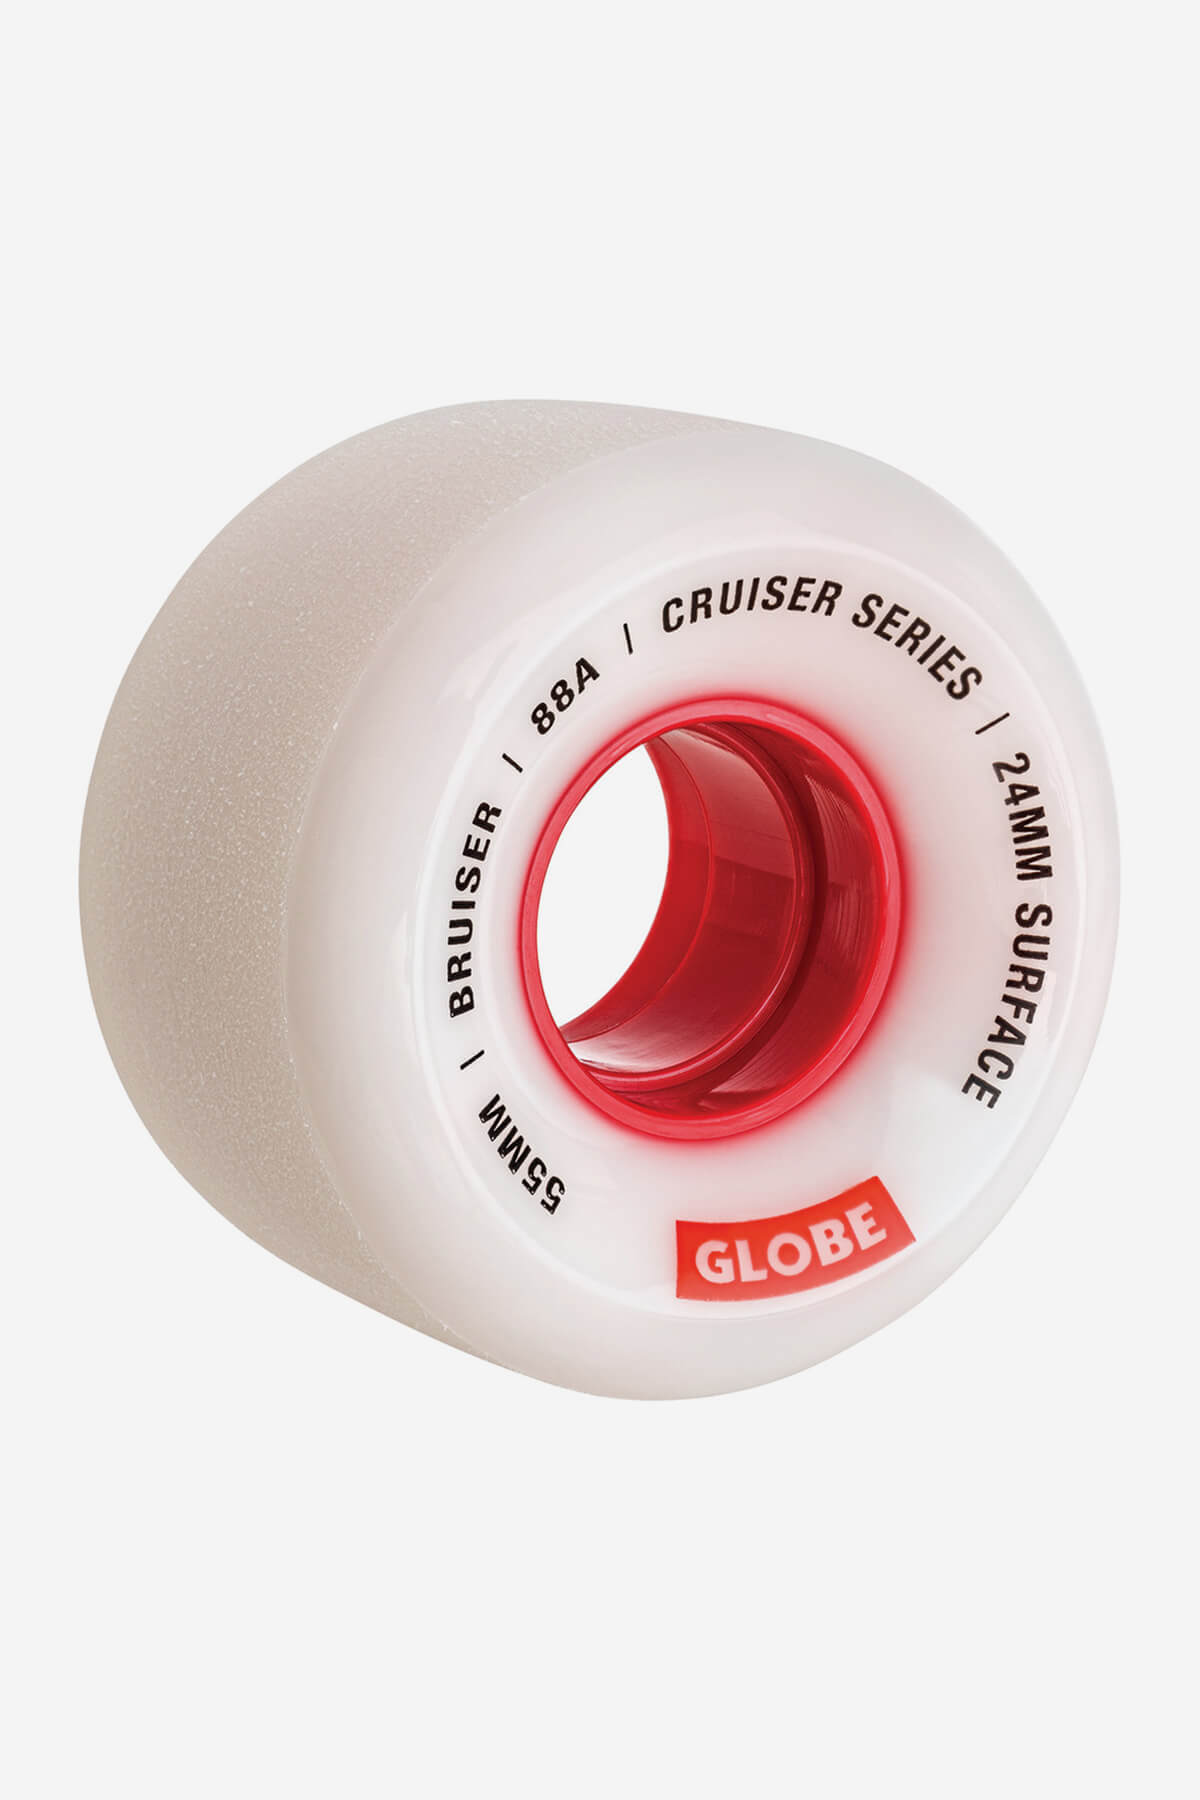 Globe roues Bruiser Cruiser Skateboard Wheel 55mm dans White/Red/55